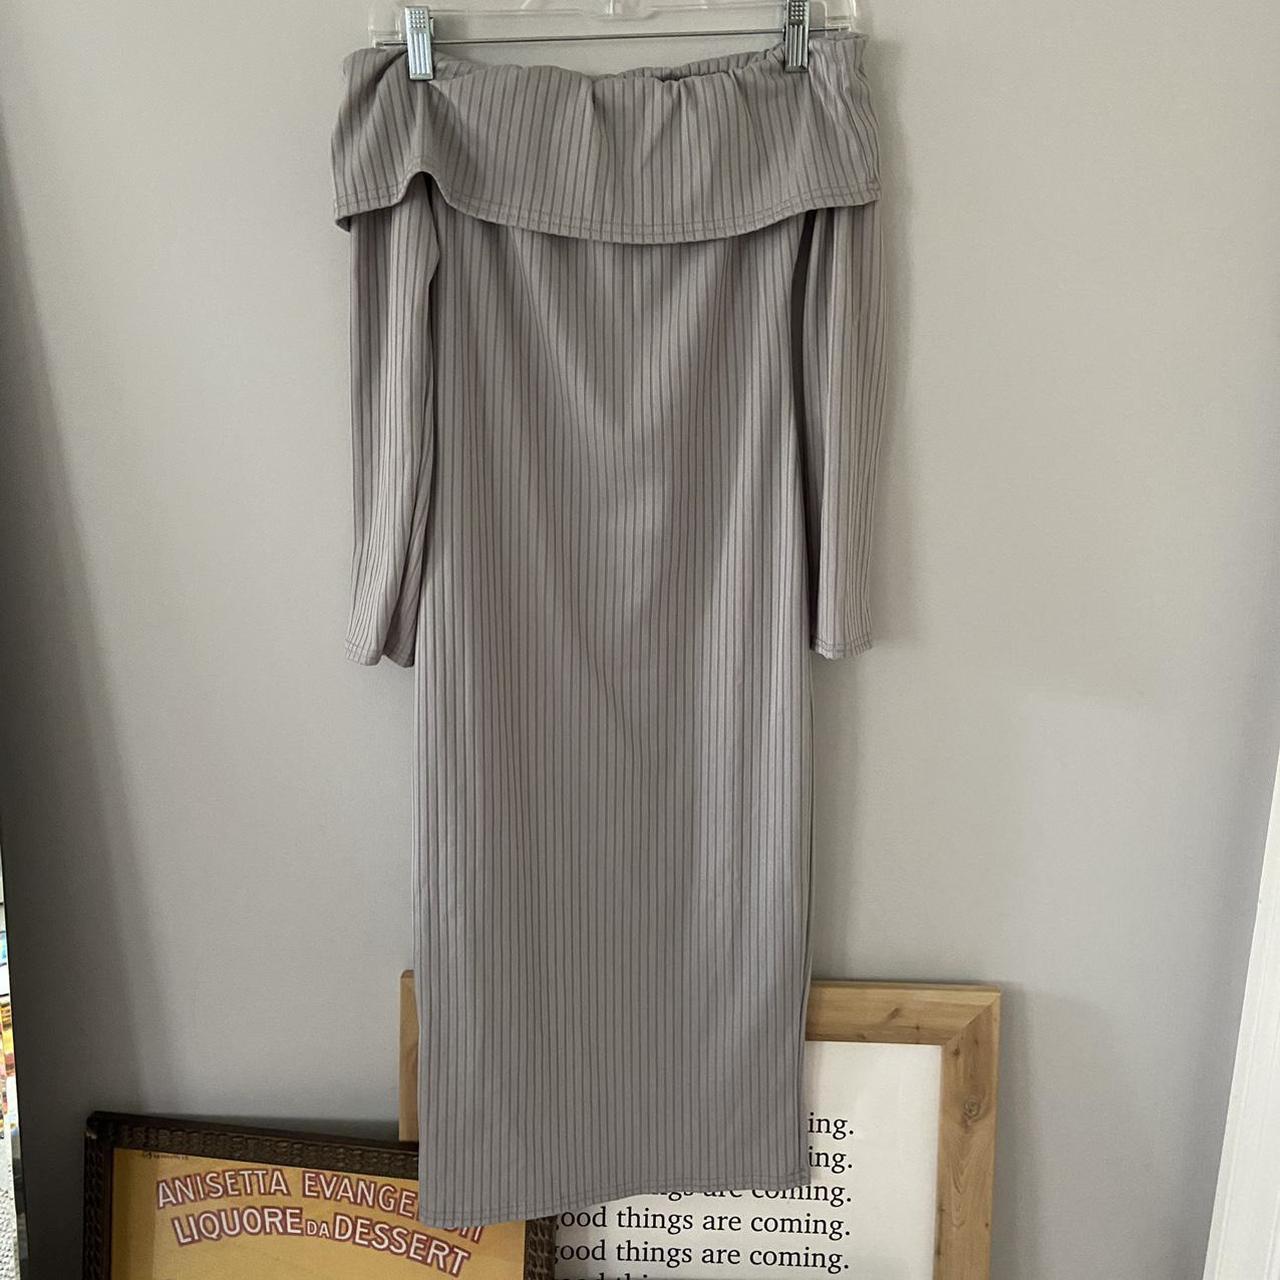 Women's Grey Dress